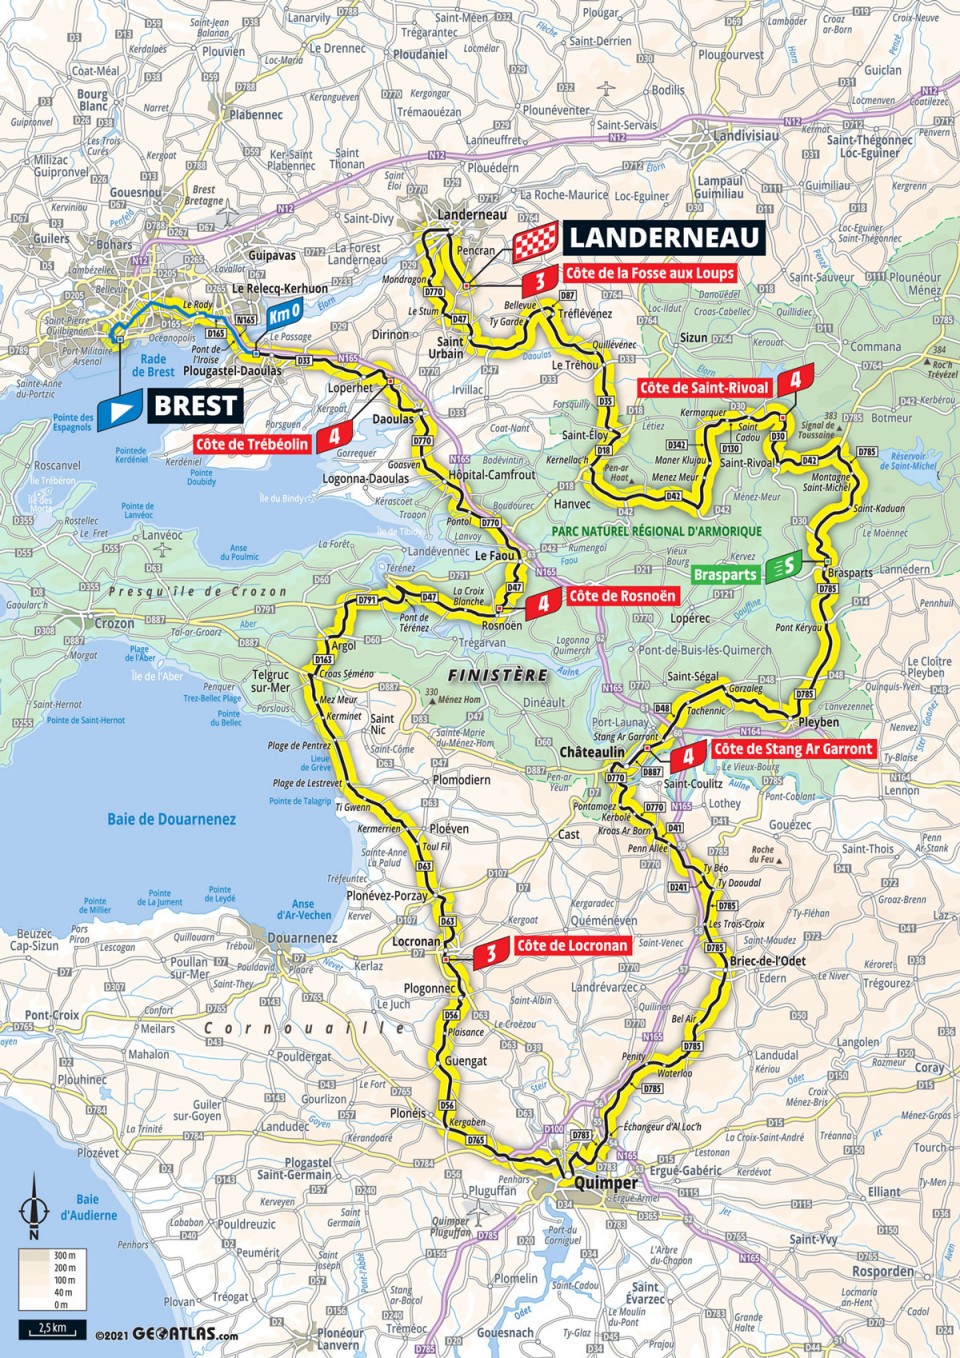 6月26日（土）第1ステージ　ブレスト〜ランデルノー　197.8km